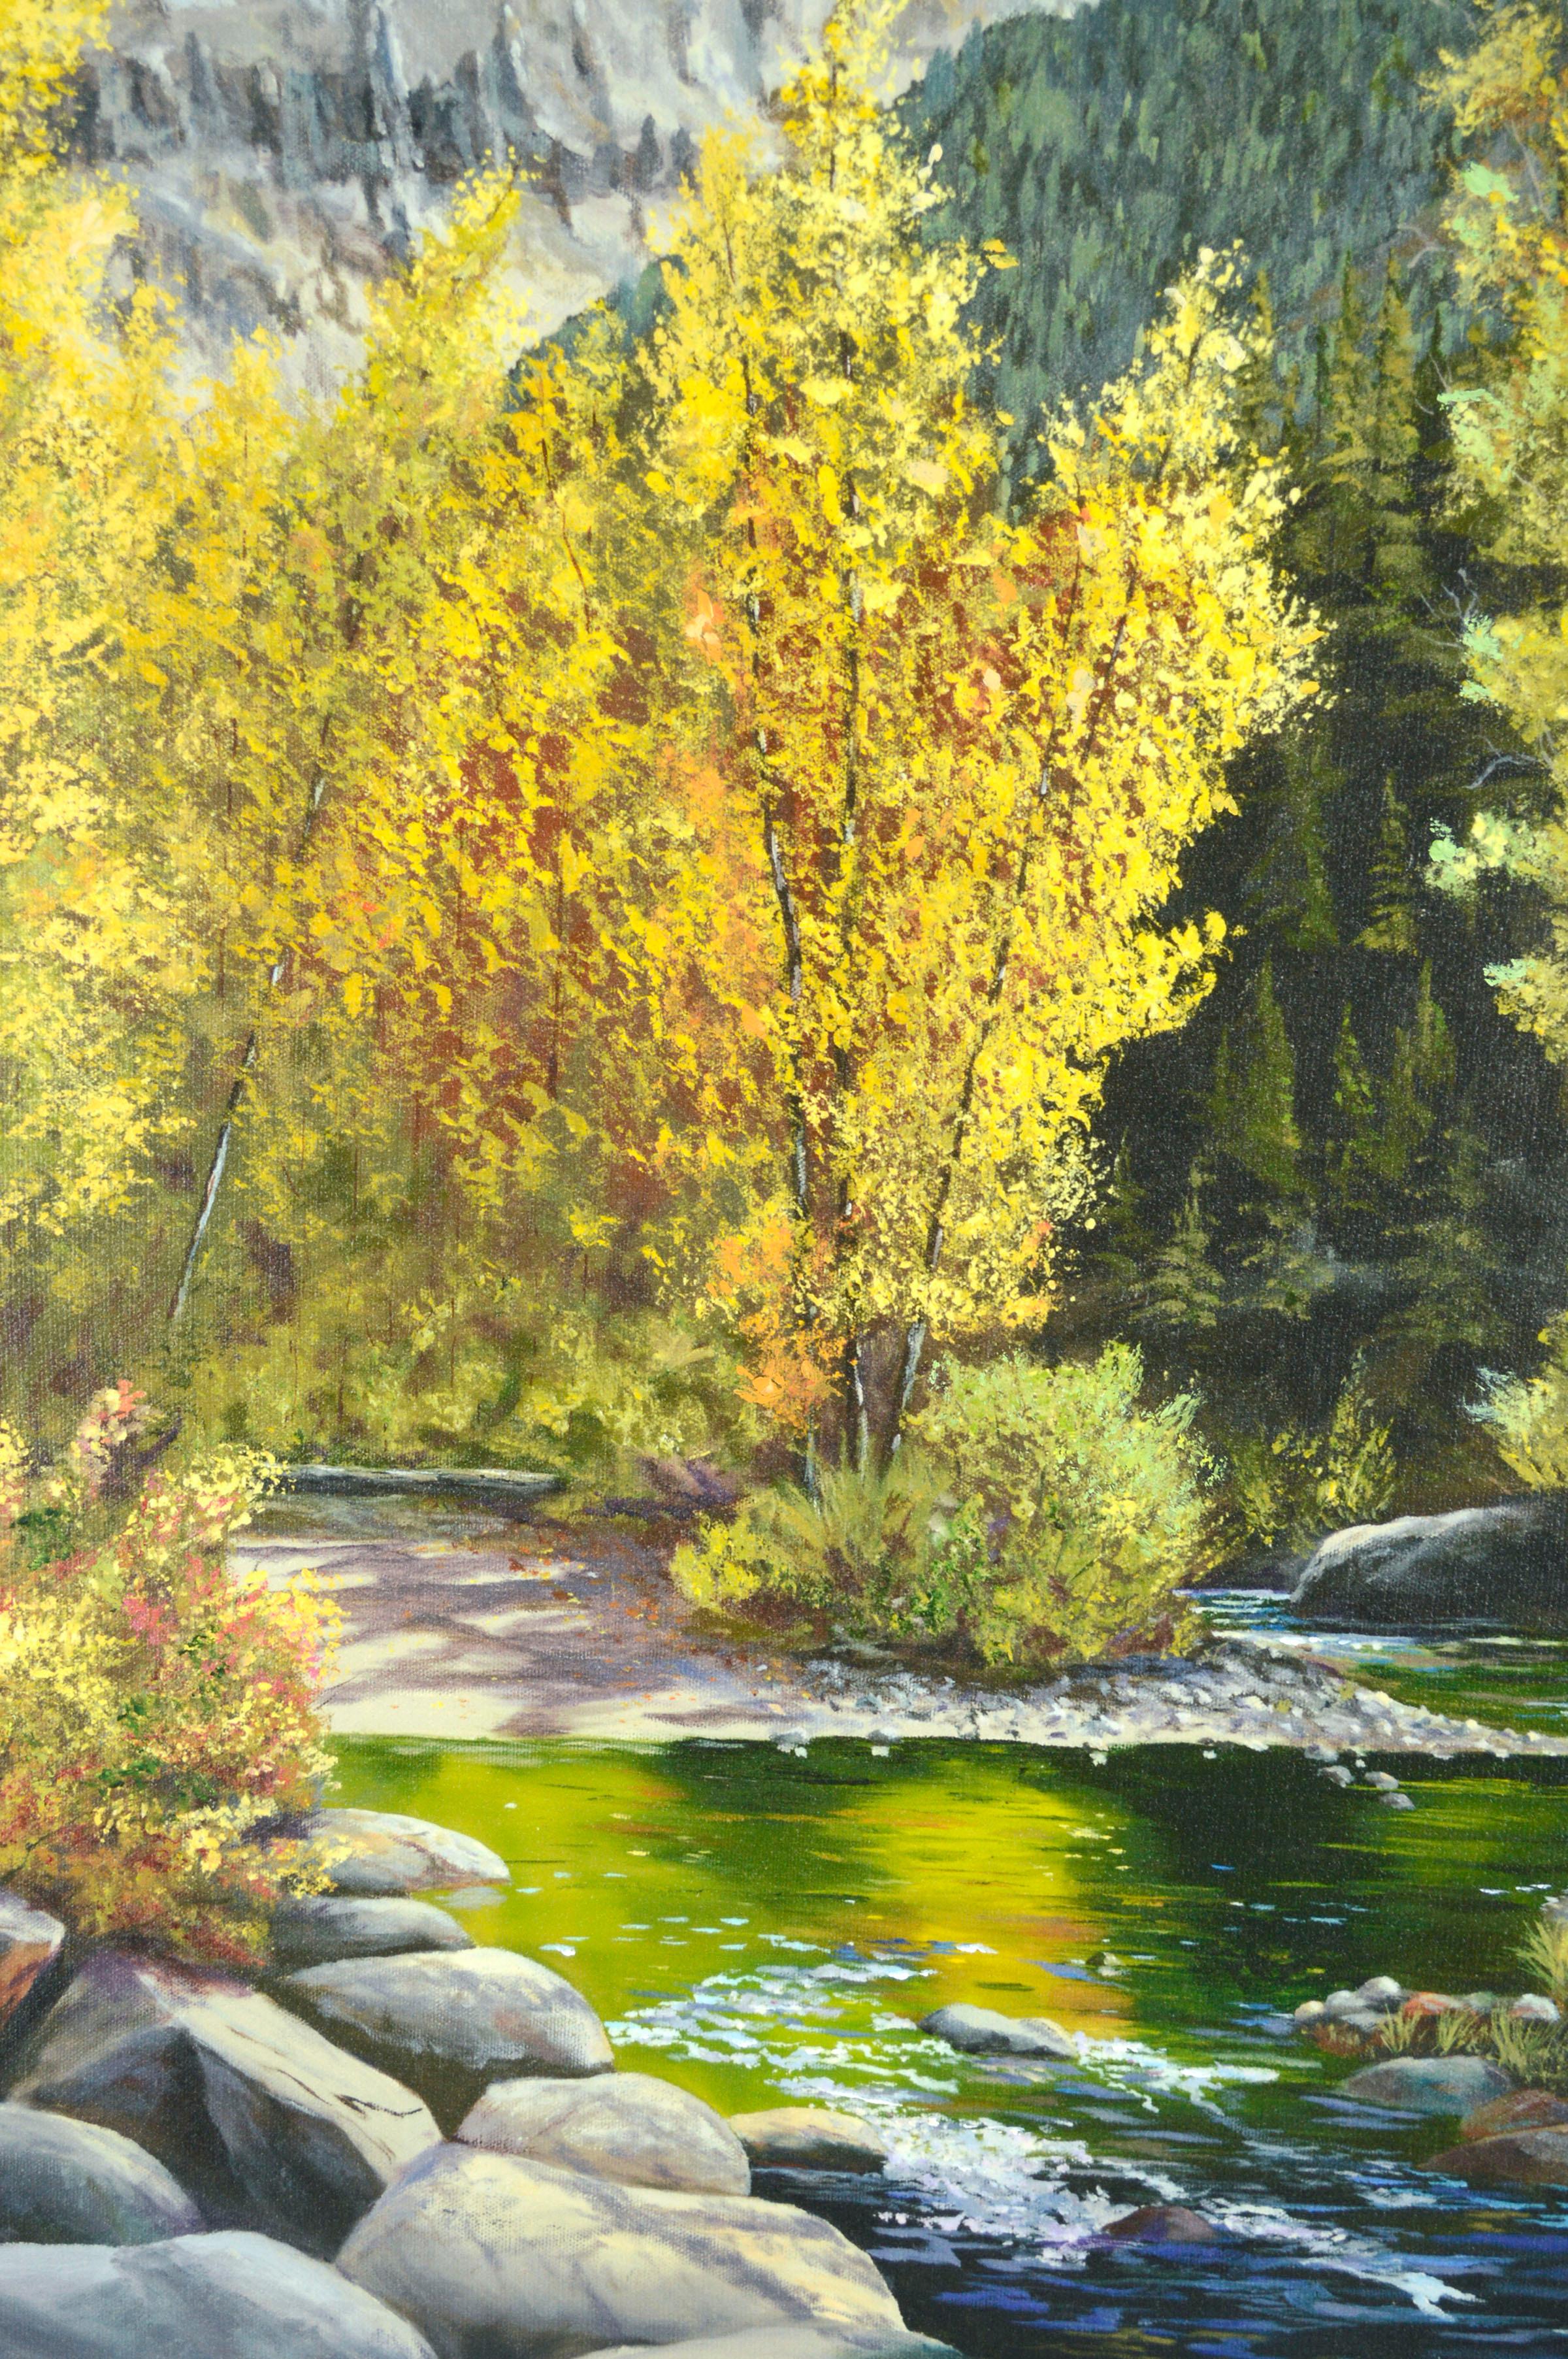 Sierra Mountain Stream in Autumn, Contemporary California Giclée auf Leinwand (Amerikanischer Impressionismus), Print, von Donald R. Britton